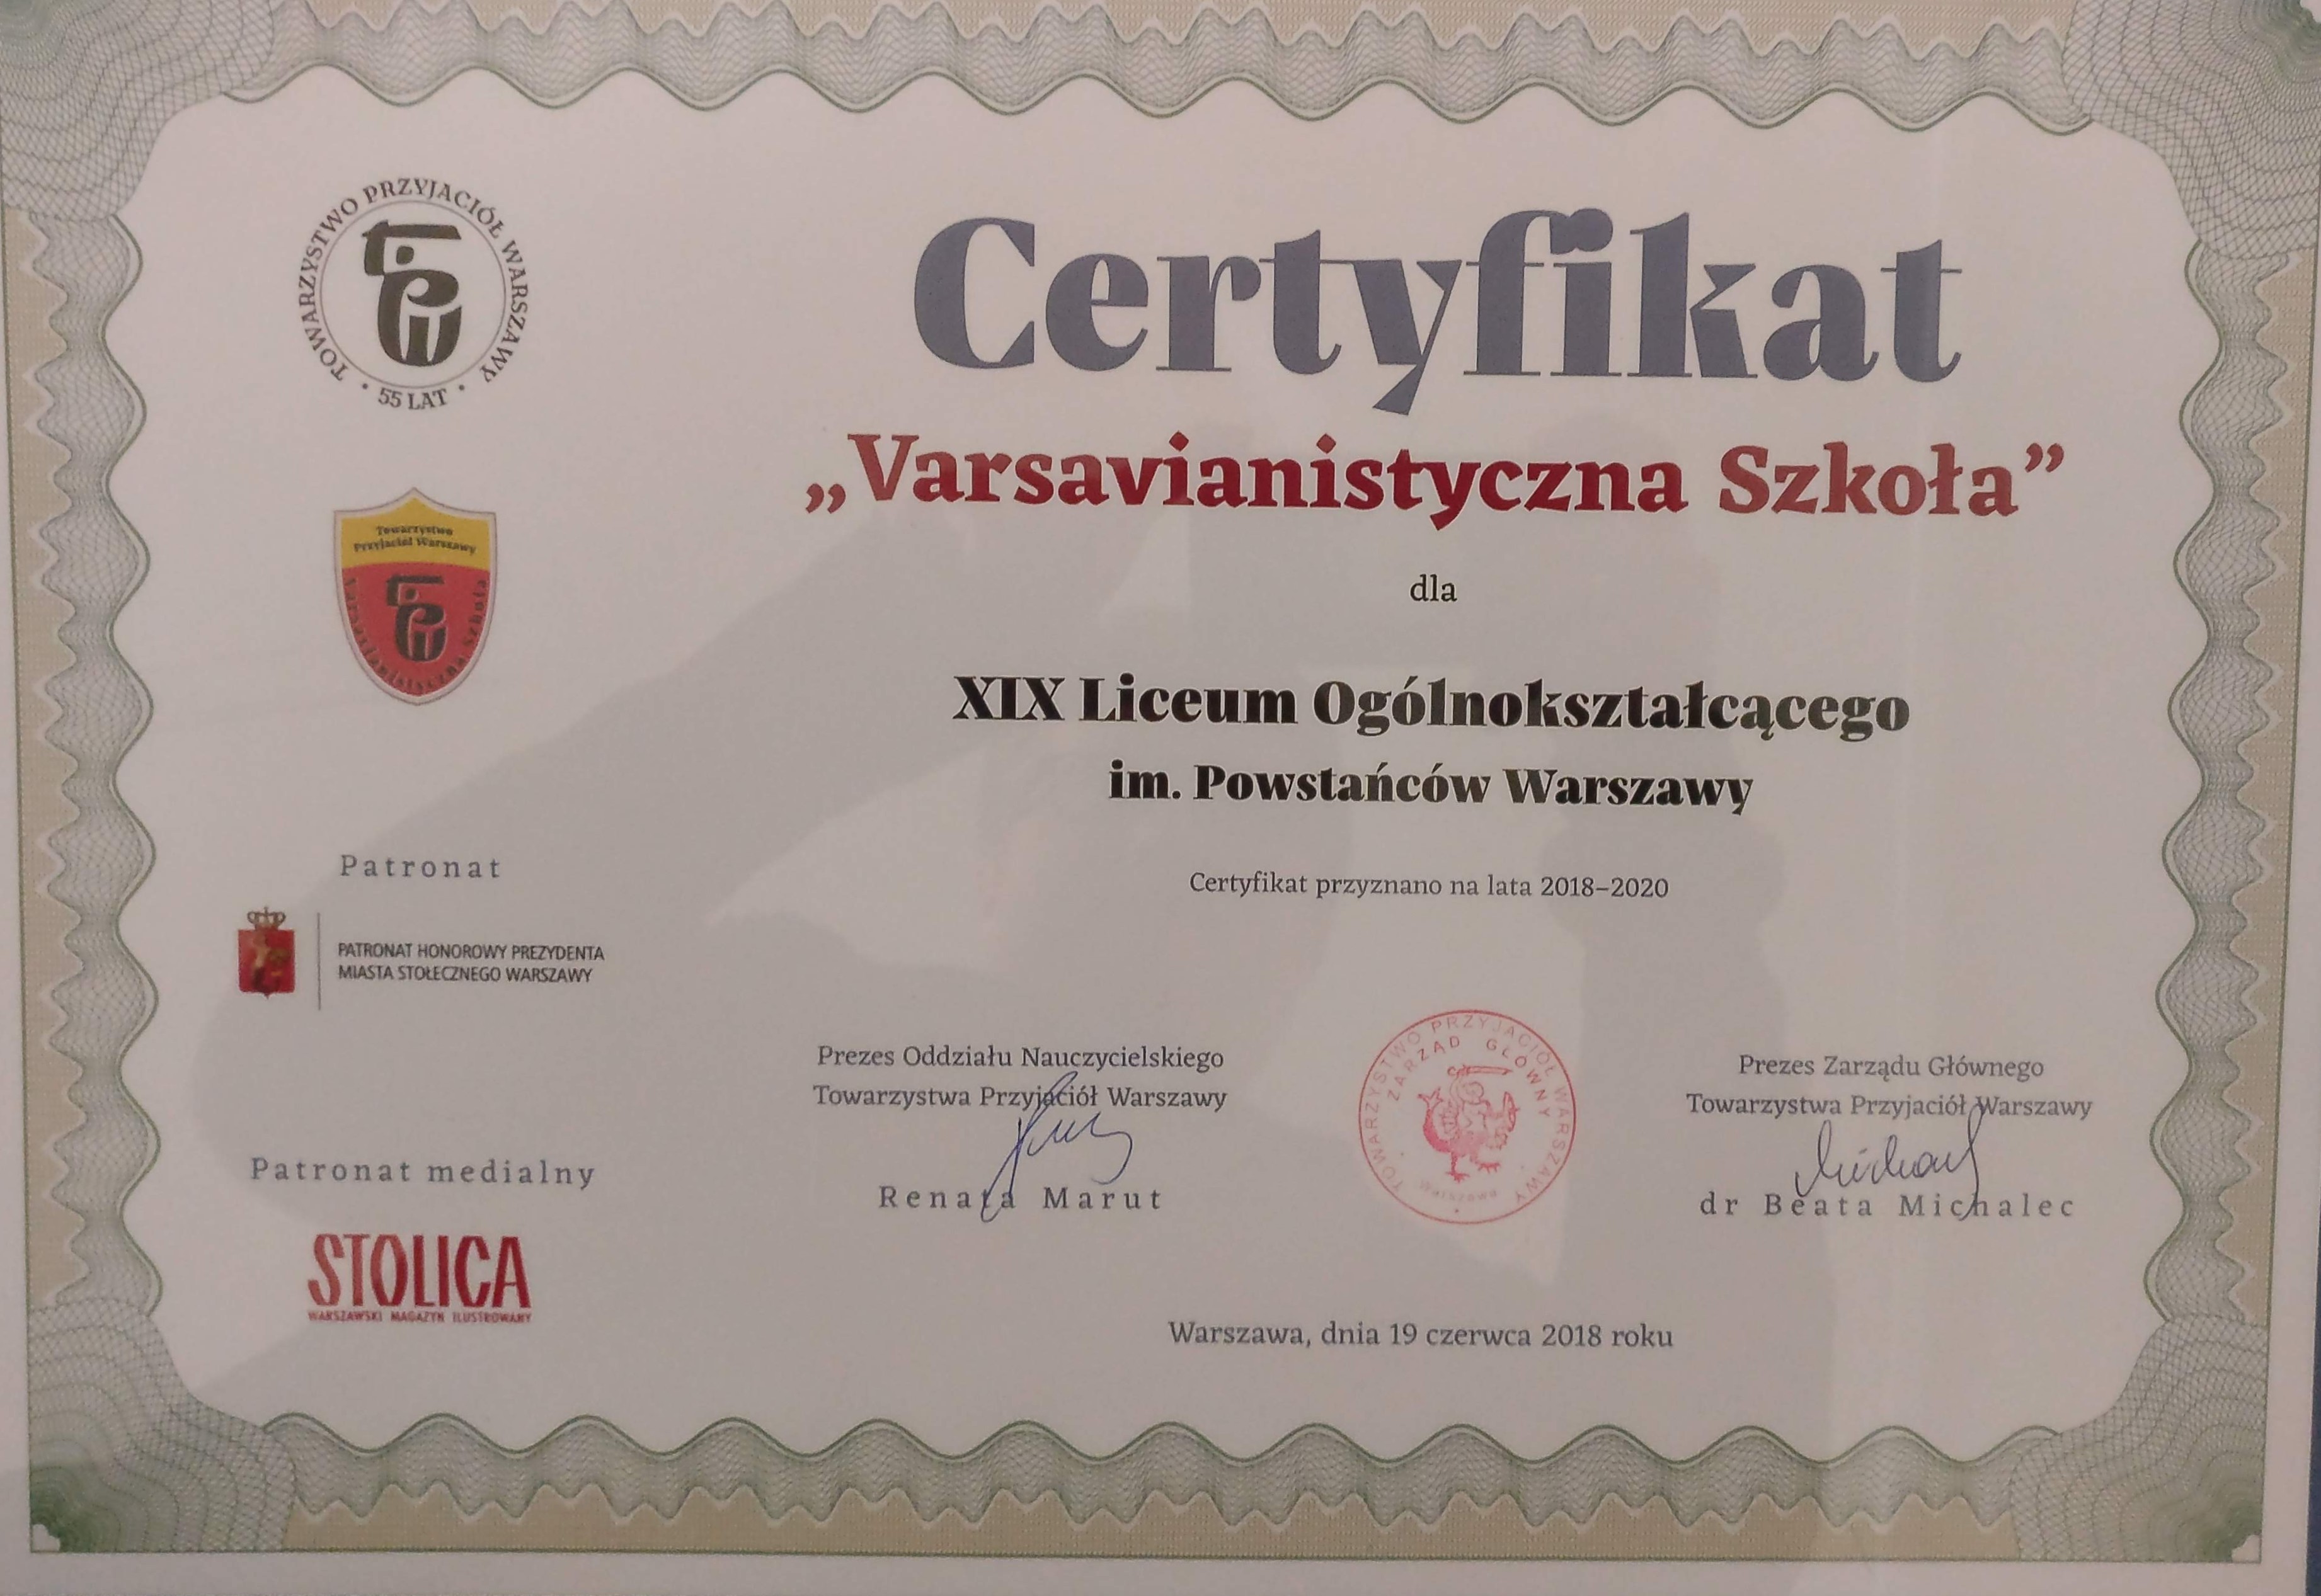 2018 19 certyfikat varsavianistyczny